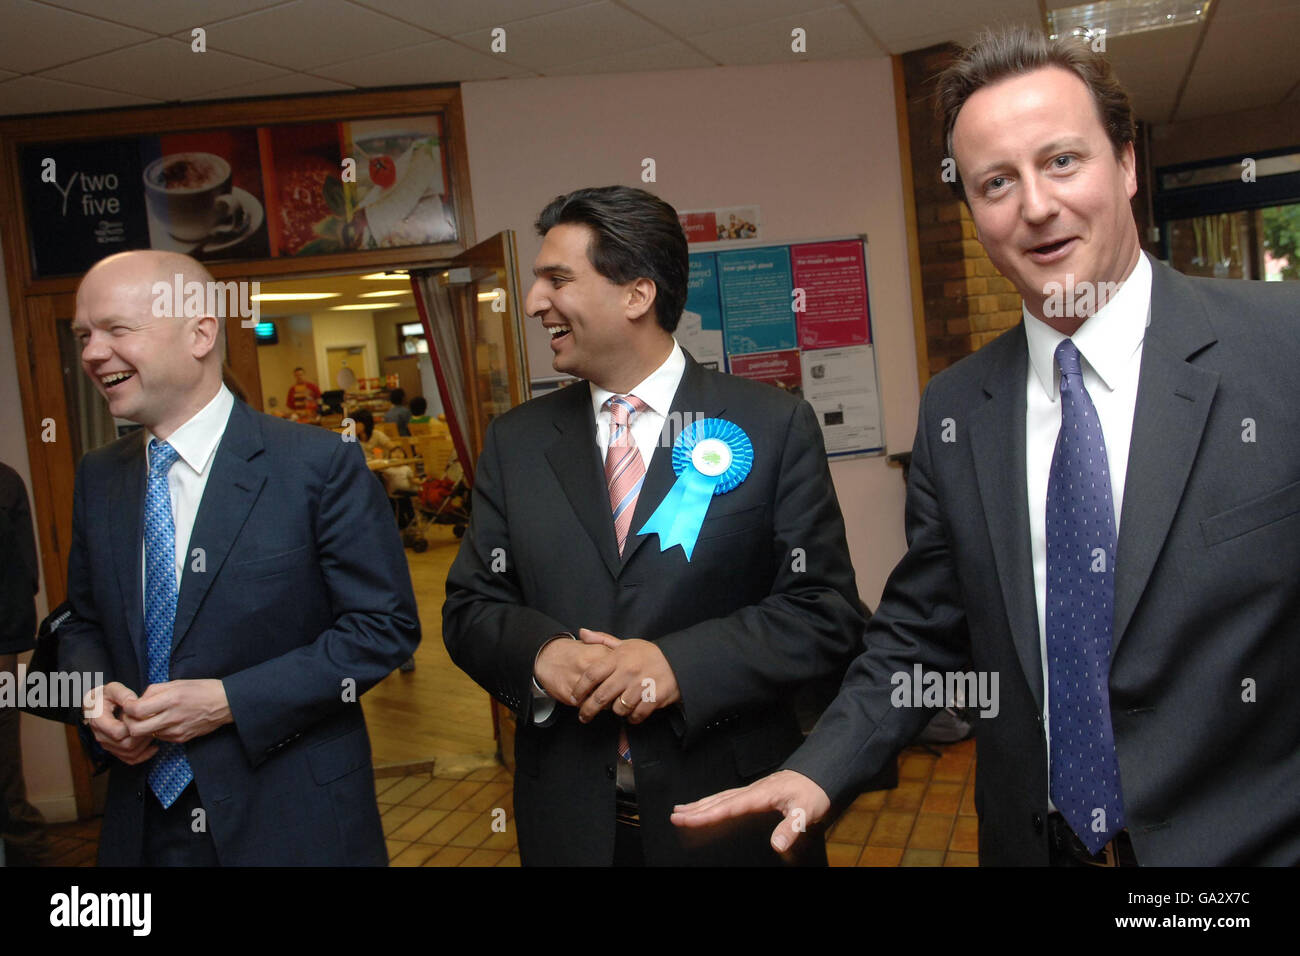 Il leader del partito conservatore David Cameron (a destra) ha fatto campagne per le elezioni del consiglio a Ealing, Londra occidentale oggi con il candidato Tory Tony Lit (al centro) e il segretario ombra agli Esteri William Hague (a sinistra). Foto Stock